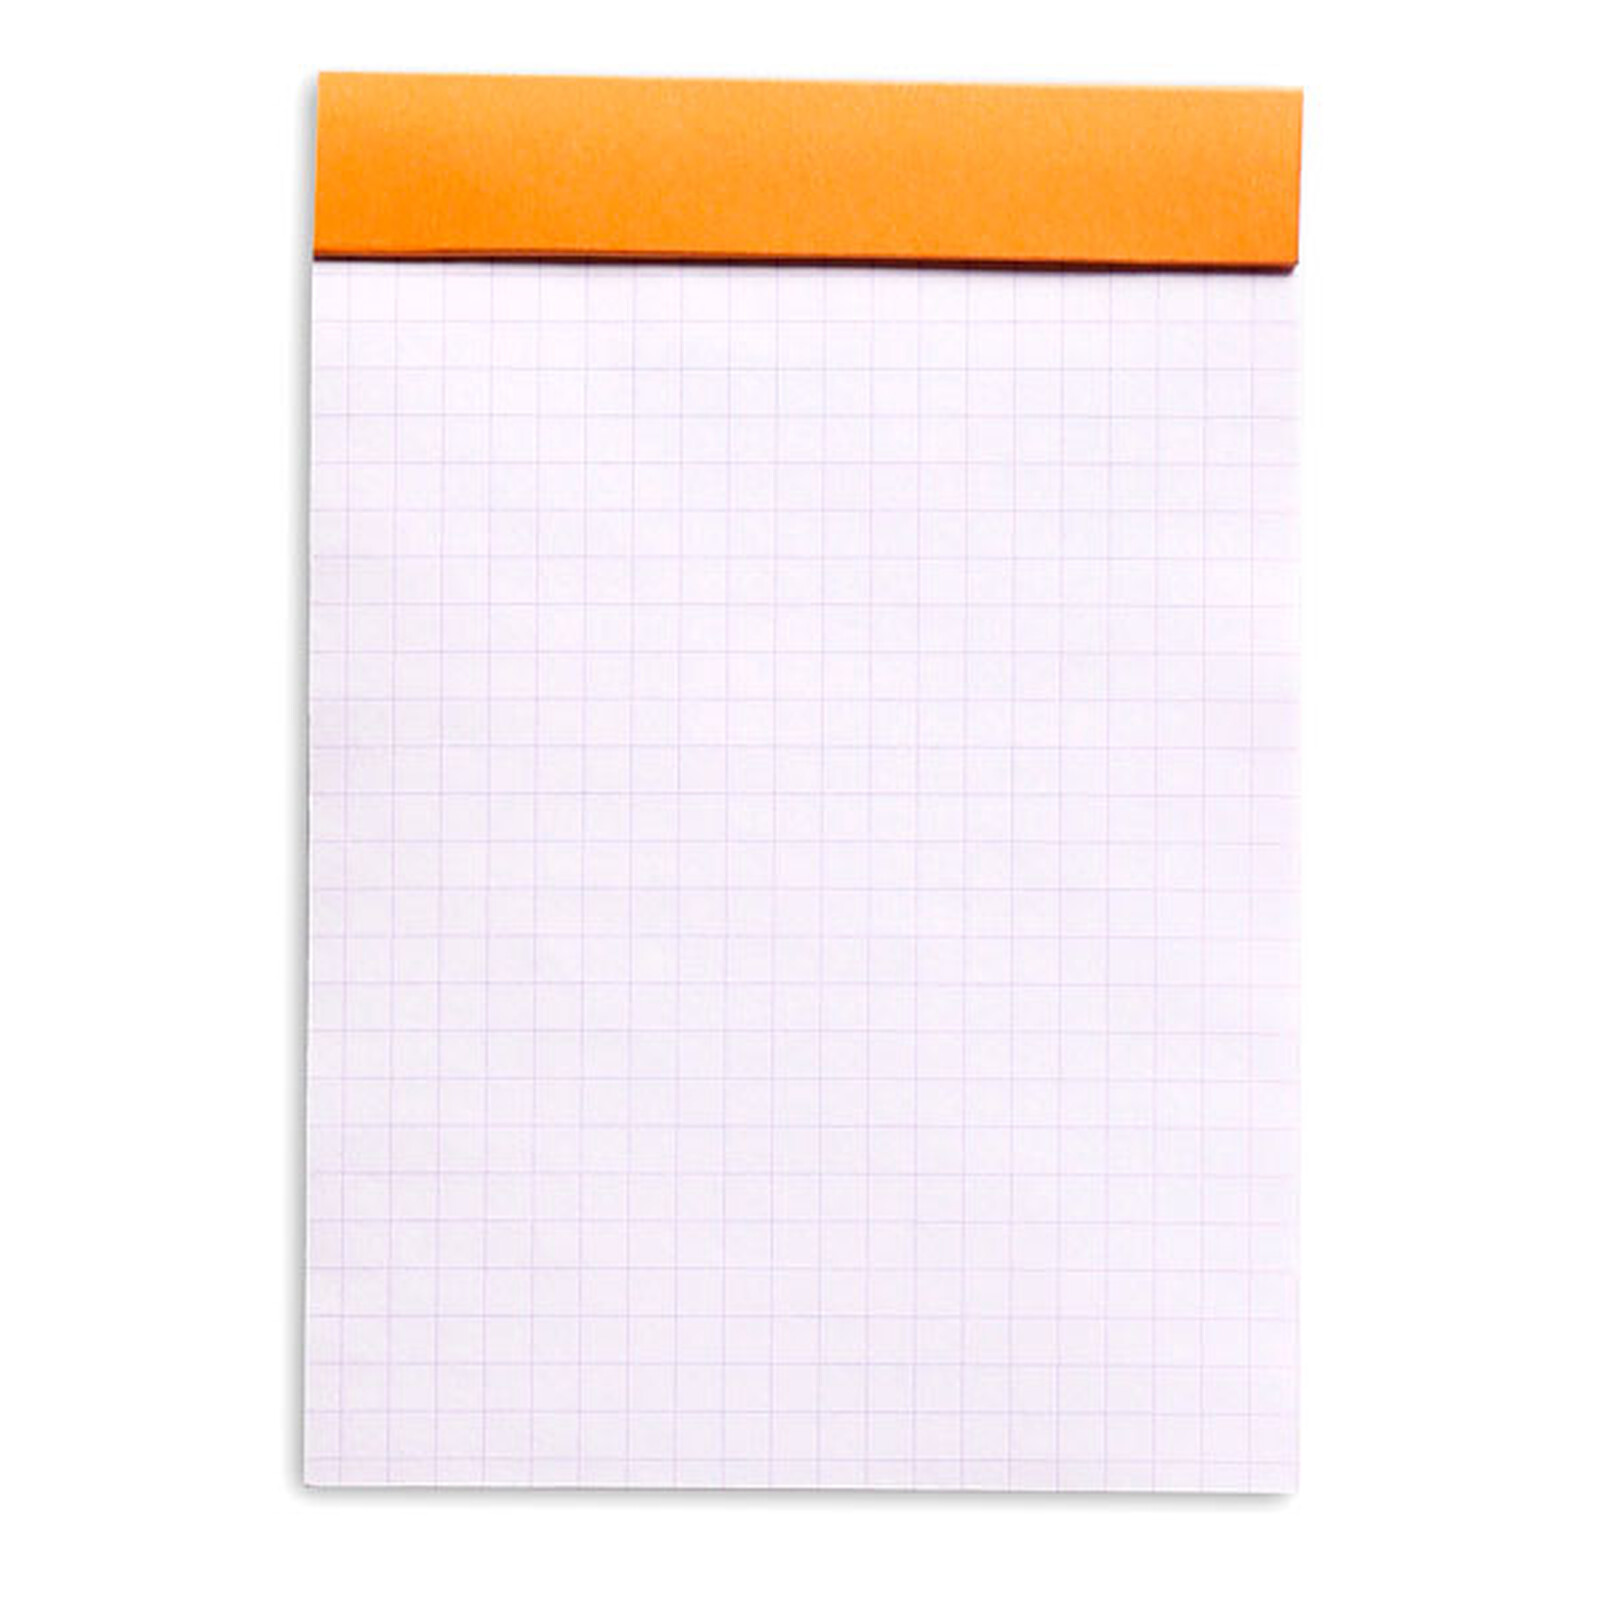 Rhodia Bloc notes agrafé orange A6 10,5 x 14,8 cm - 80g - Petits carreaux  5x5 - 80 feuilles - Blocs Notesfavorable à acheter dans notre magasin